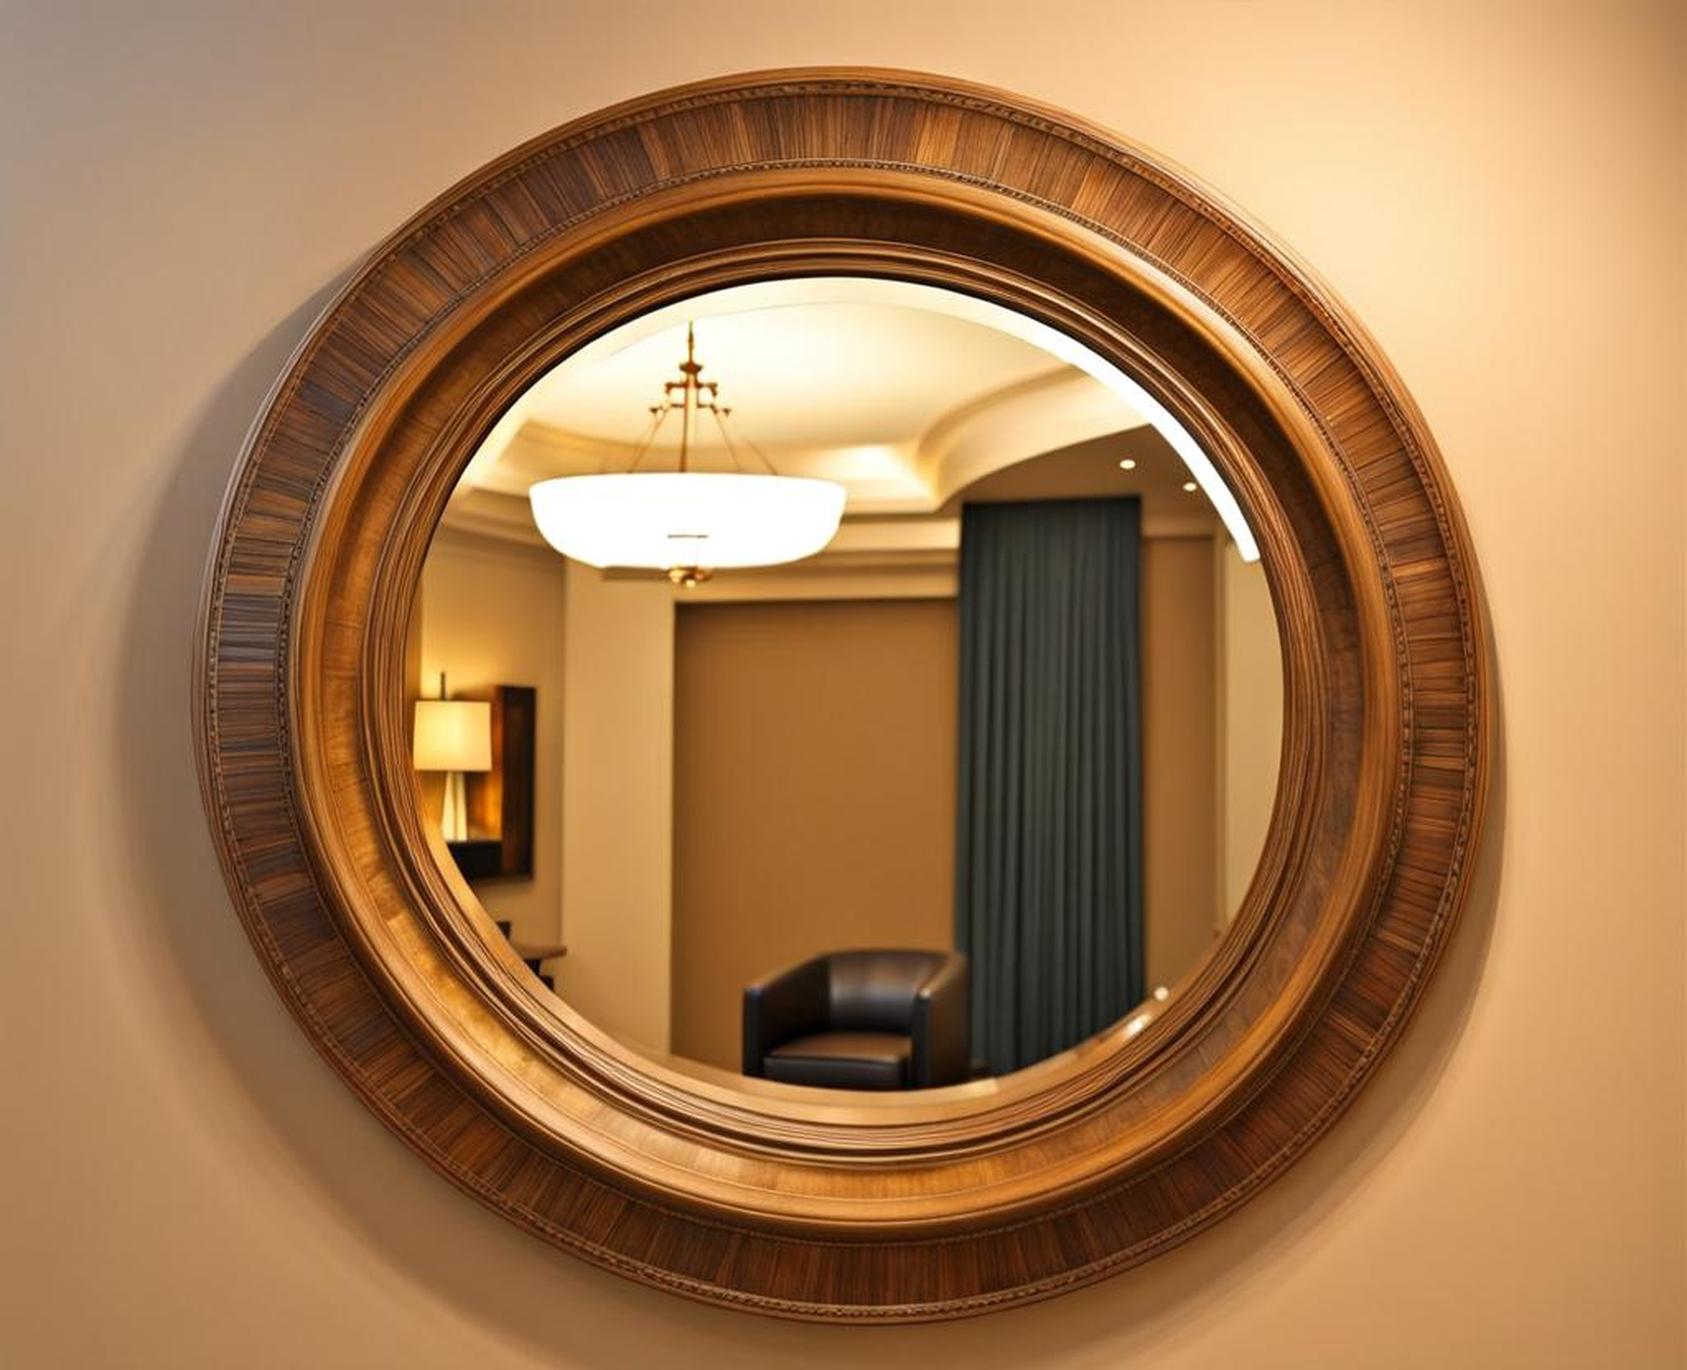 60 inch diameter round mirror